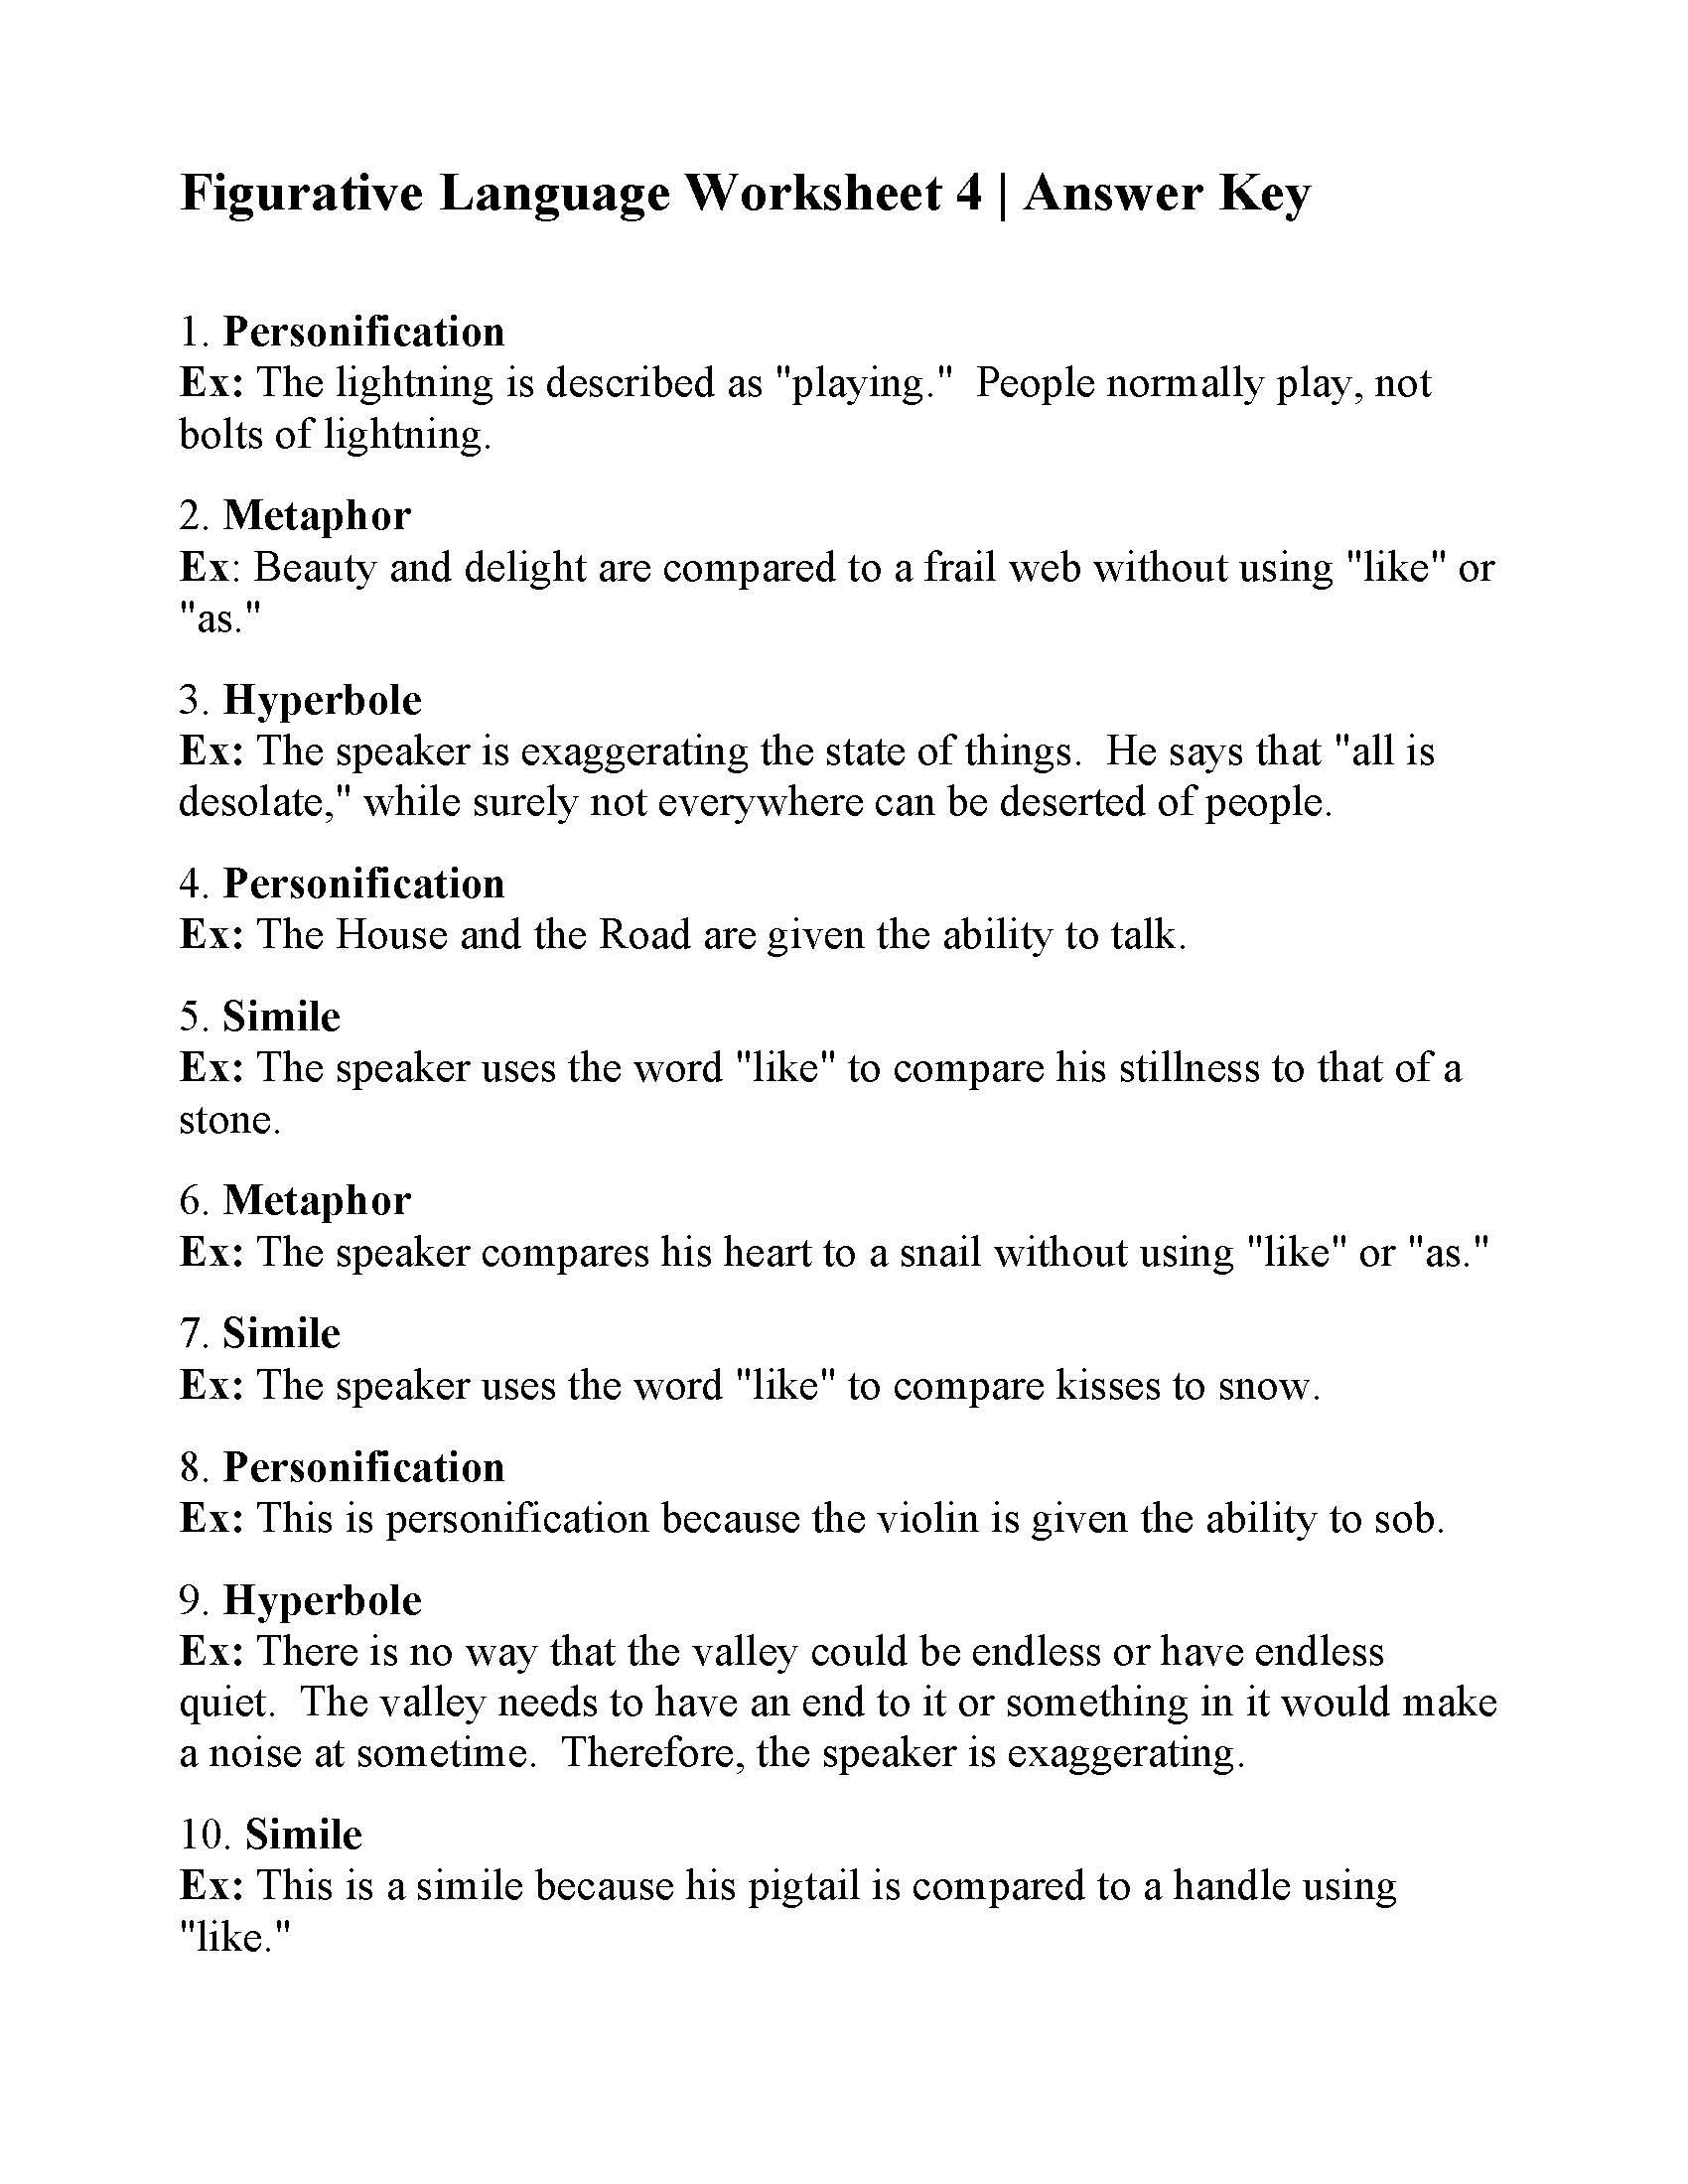 Figurative Language Worksheet 4 | Reading Activity